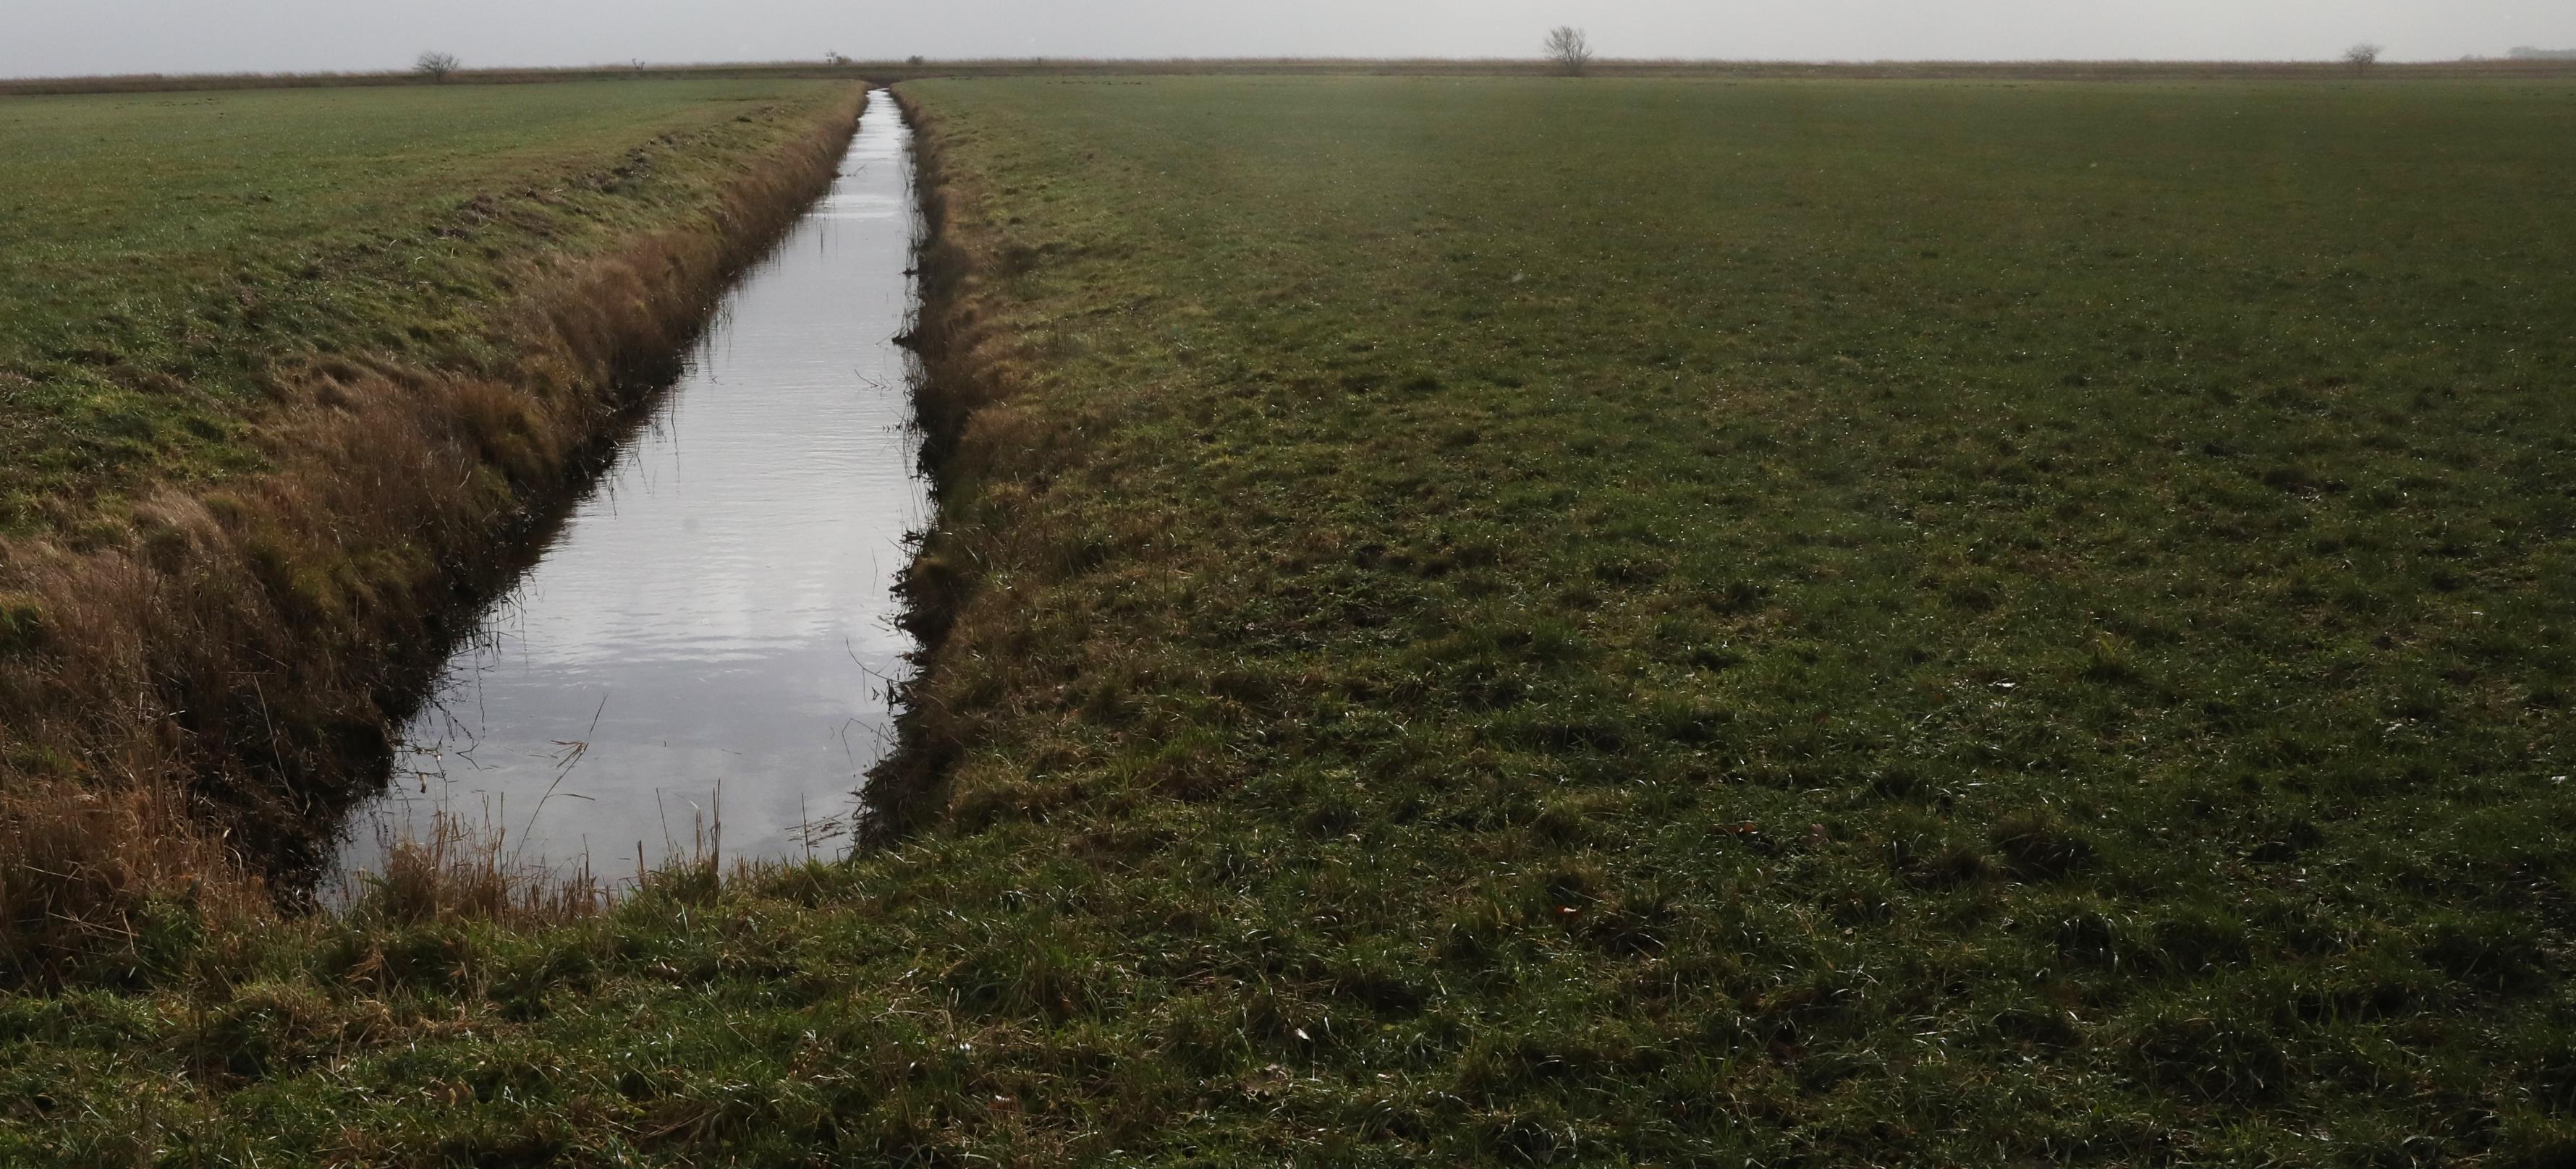 Ein Entwässerungsgraben in einem trockengelegten Moor